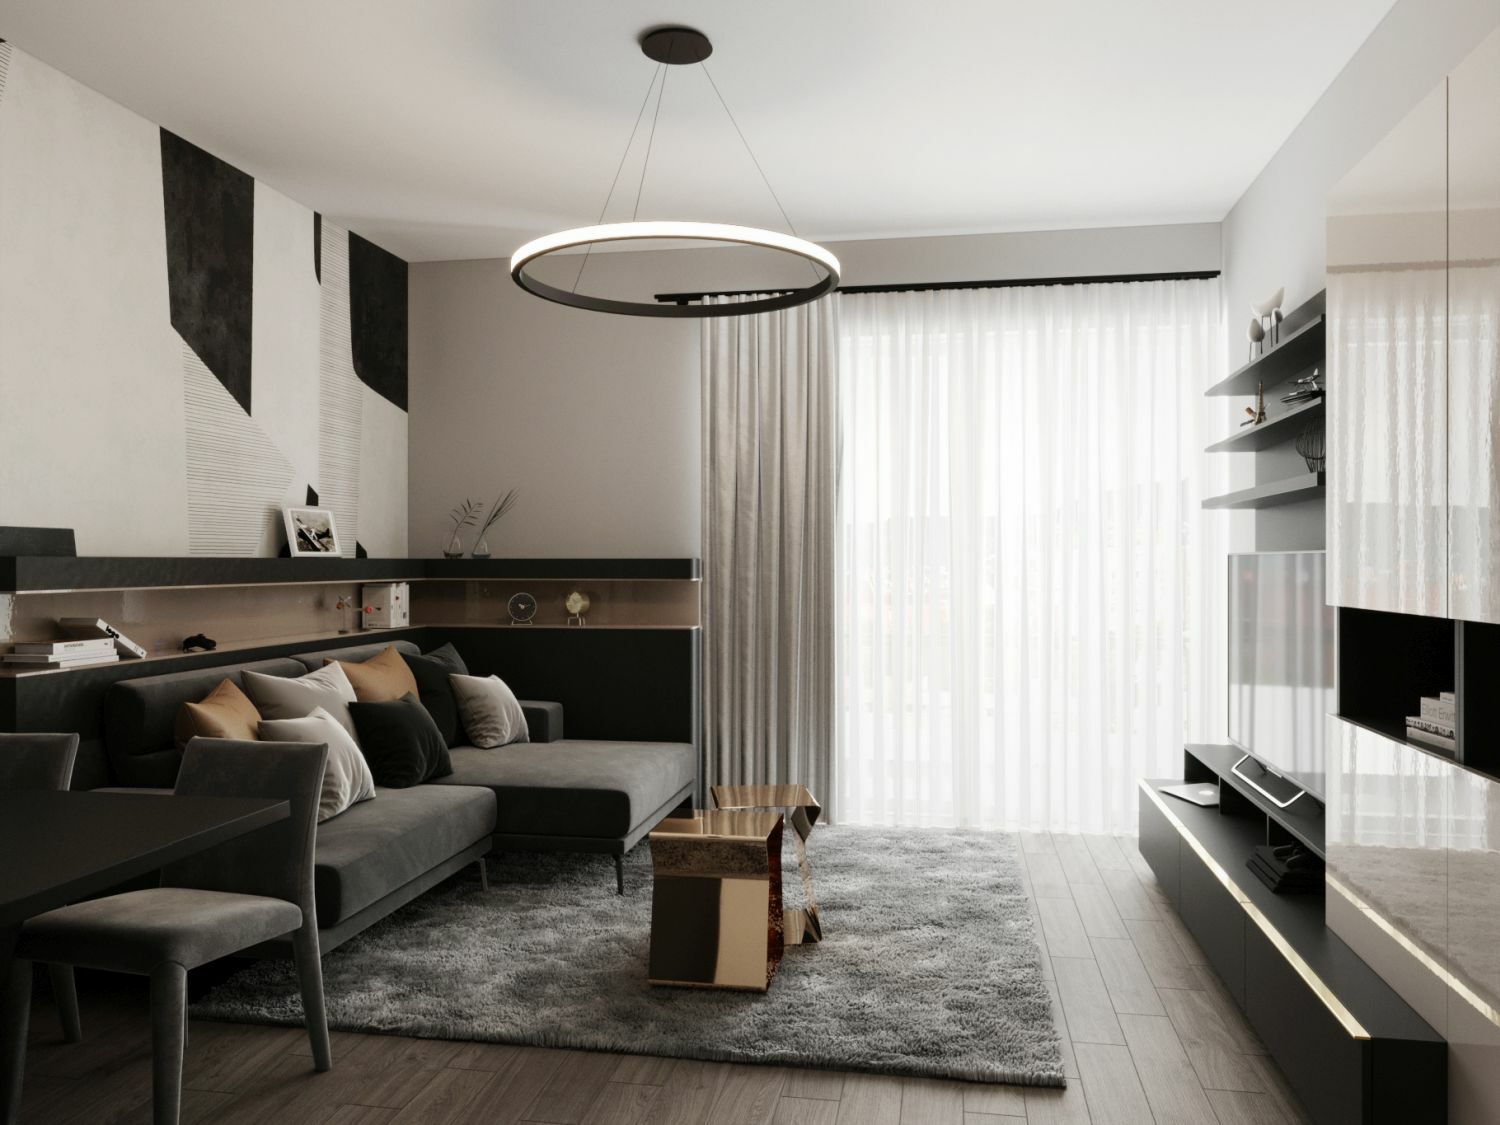 Egyedi tervezésű polc és nappali bútorok fényes felülettel